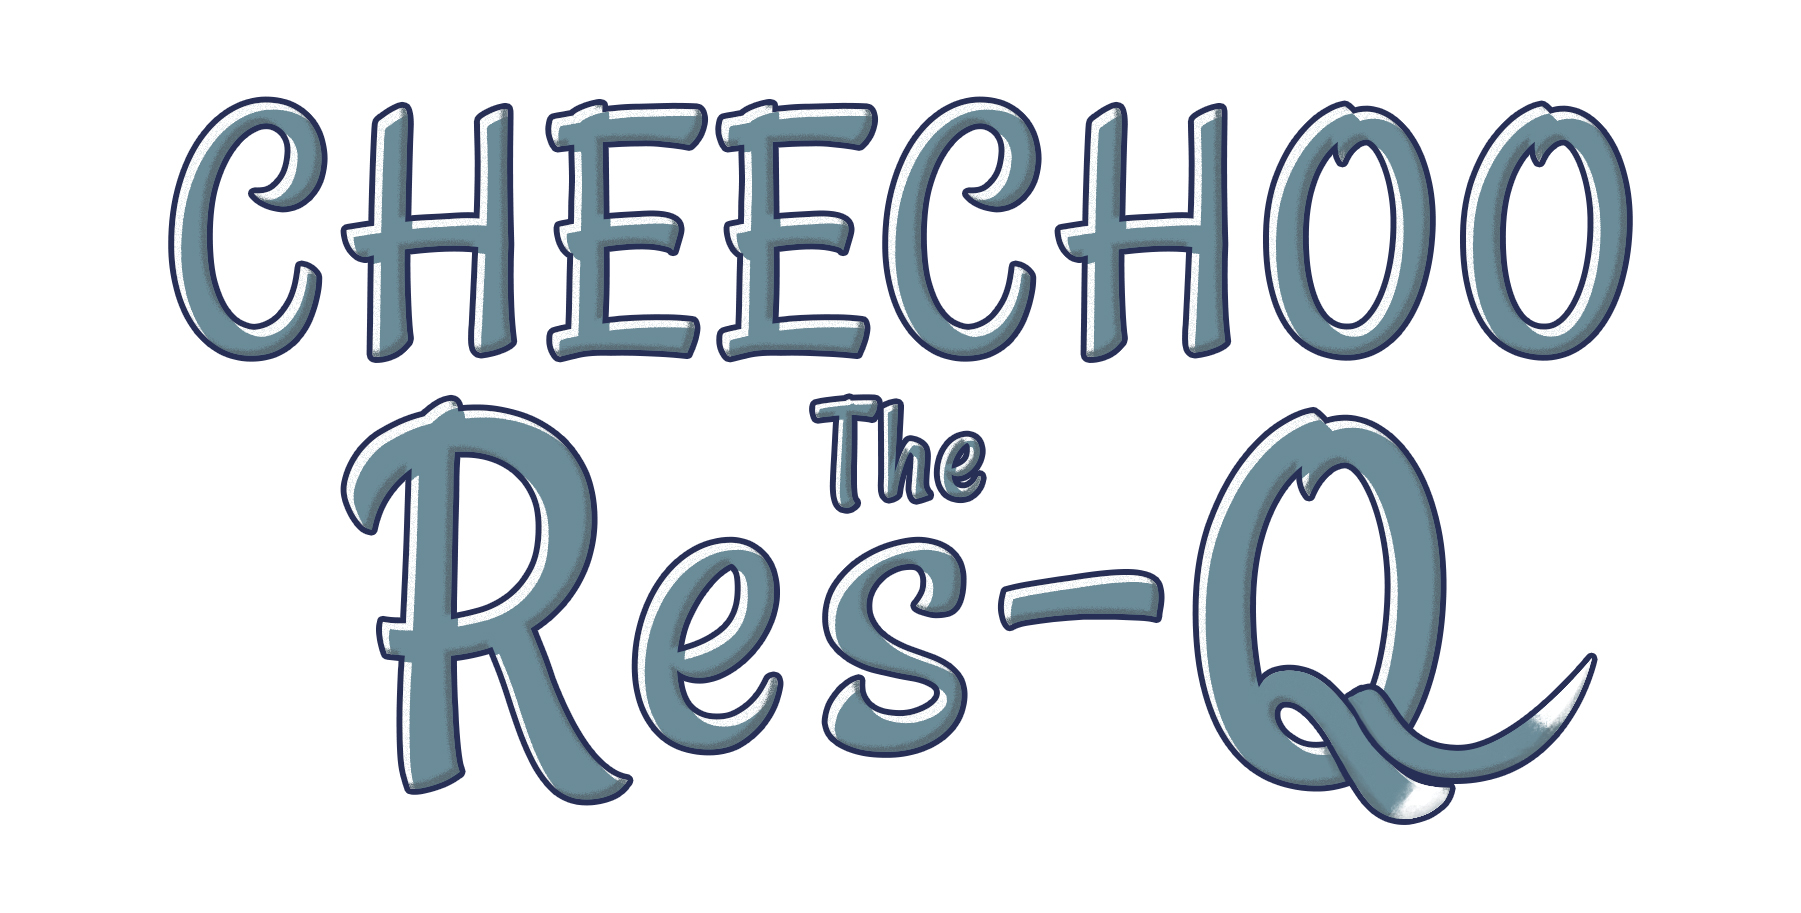 Cheechoo The Res-Q